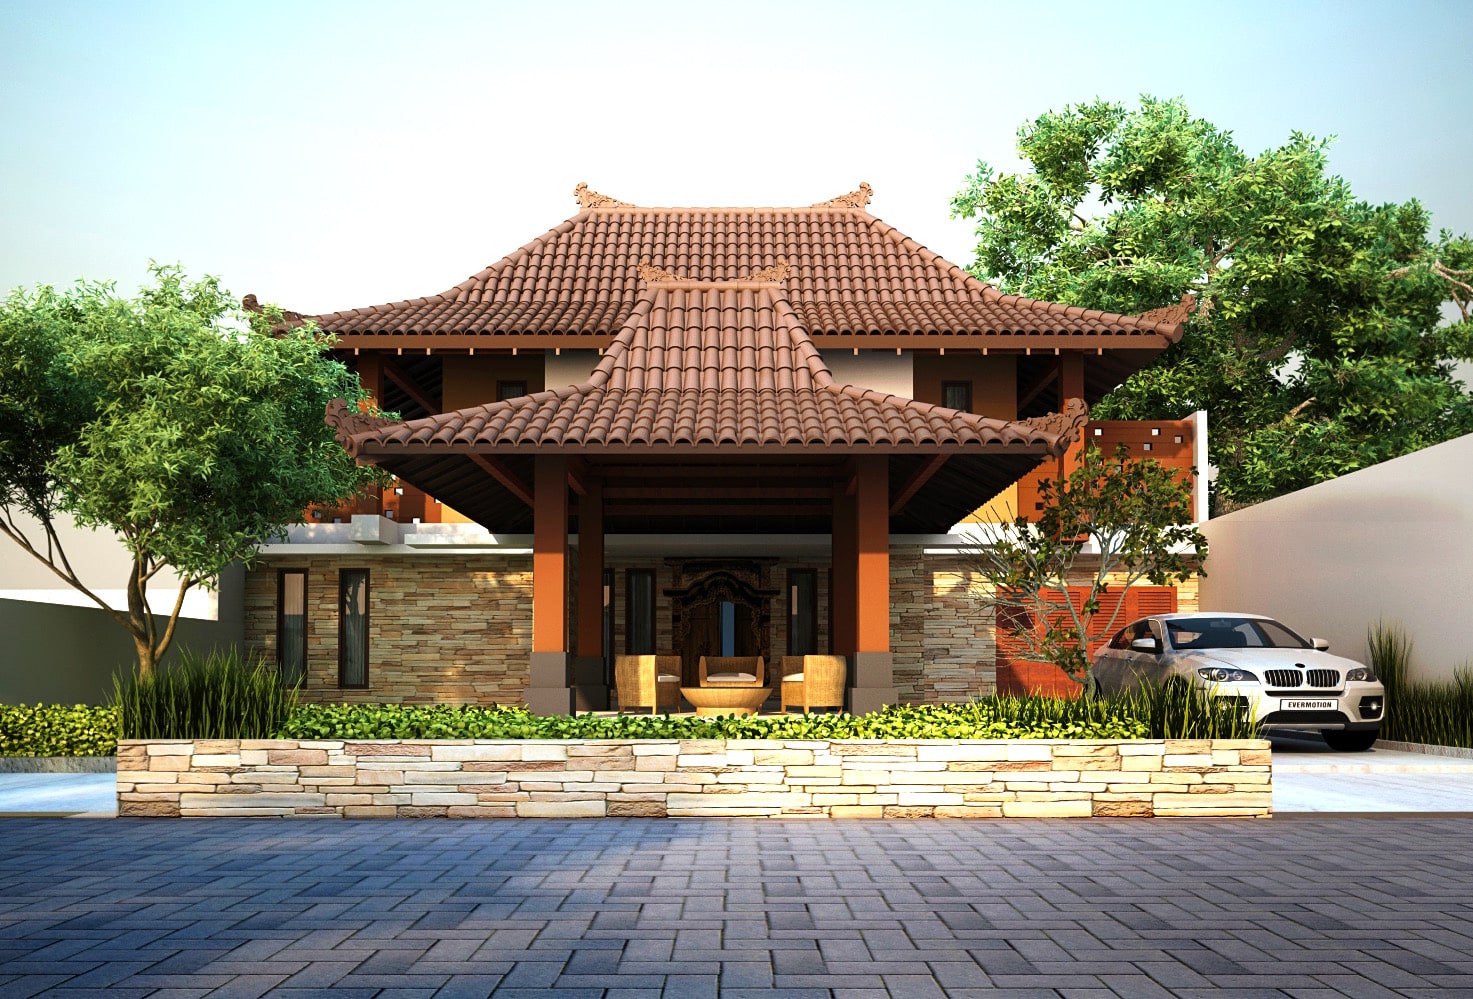 45 Contoh Desain Rumah Jawa dan Joglo Klasik dan Modern 